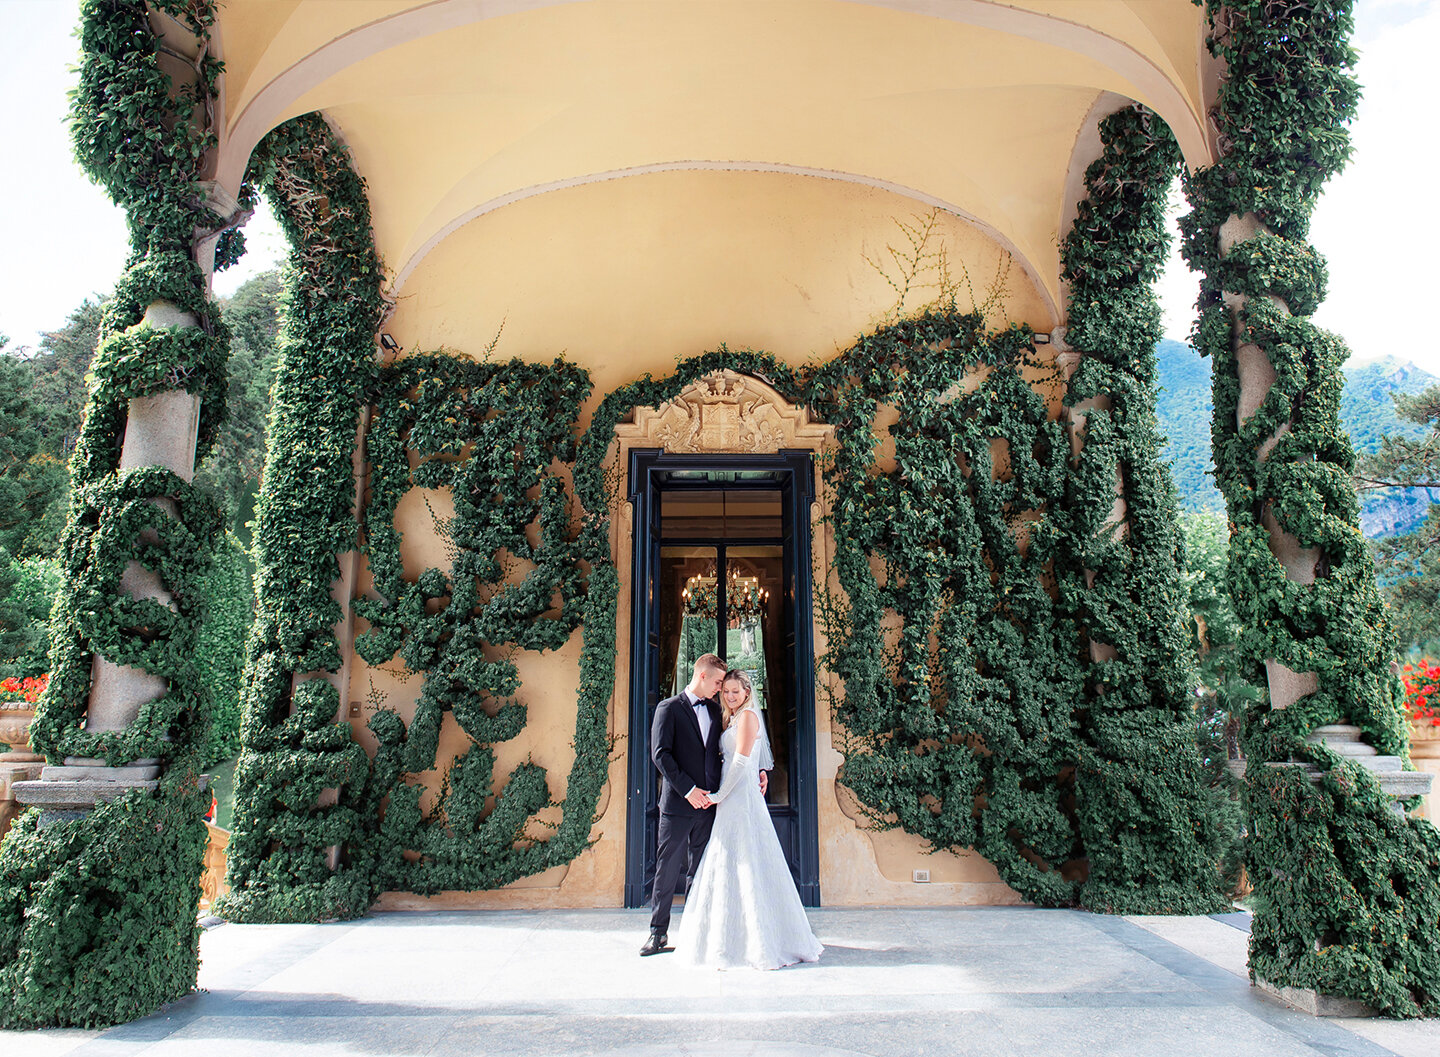 Villa del Balbianello wedding: bride and groom on the villa's elegant porch